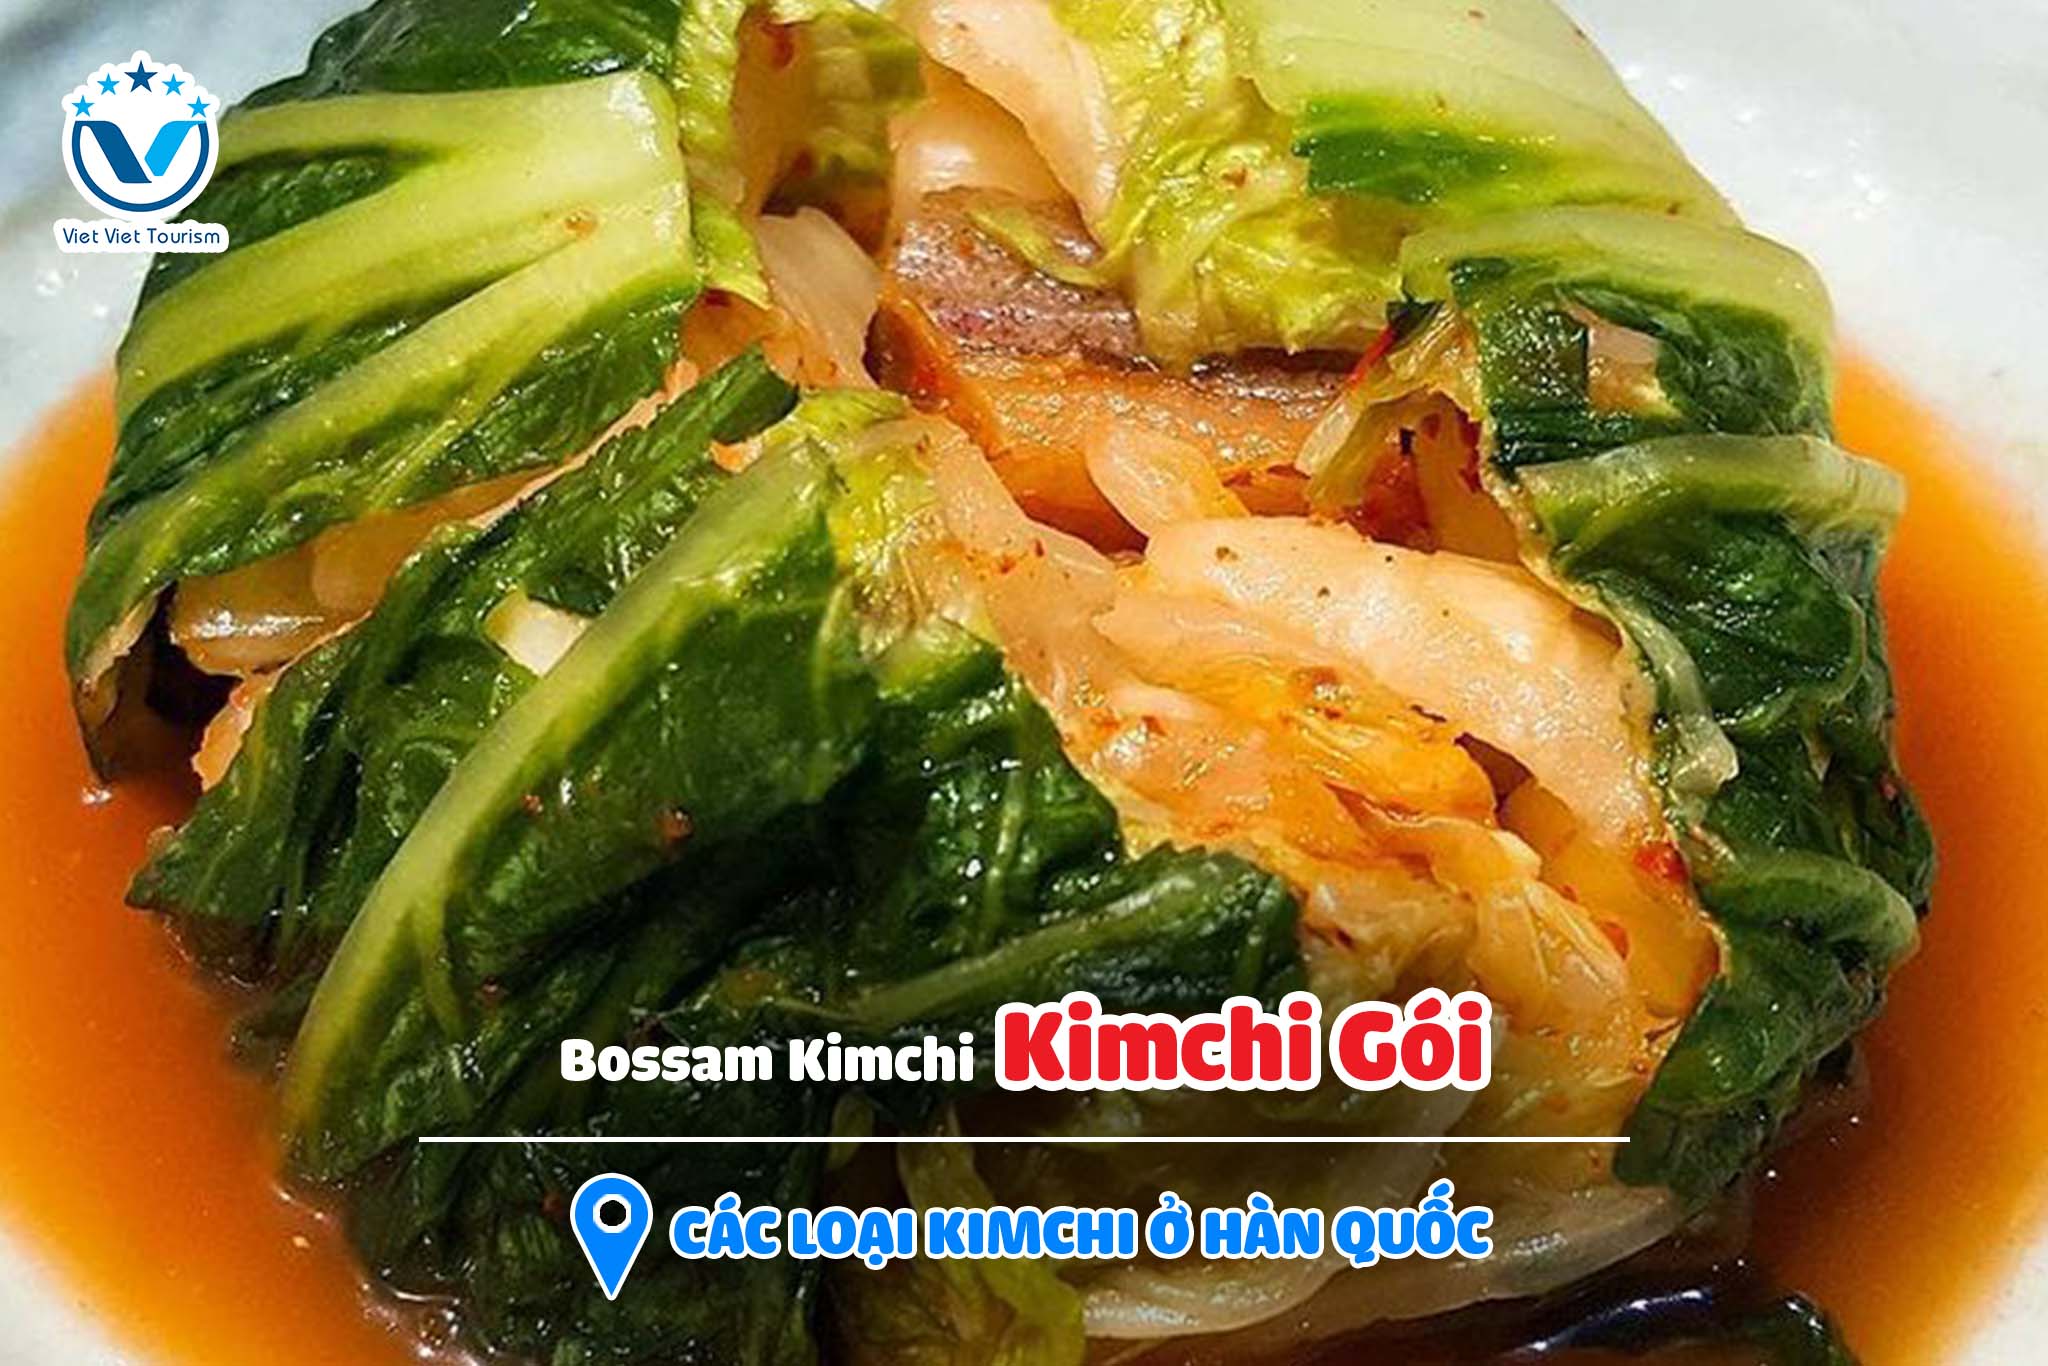 Kimchi VVT 6. Bossam Kimchi